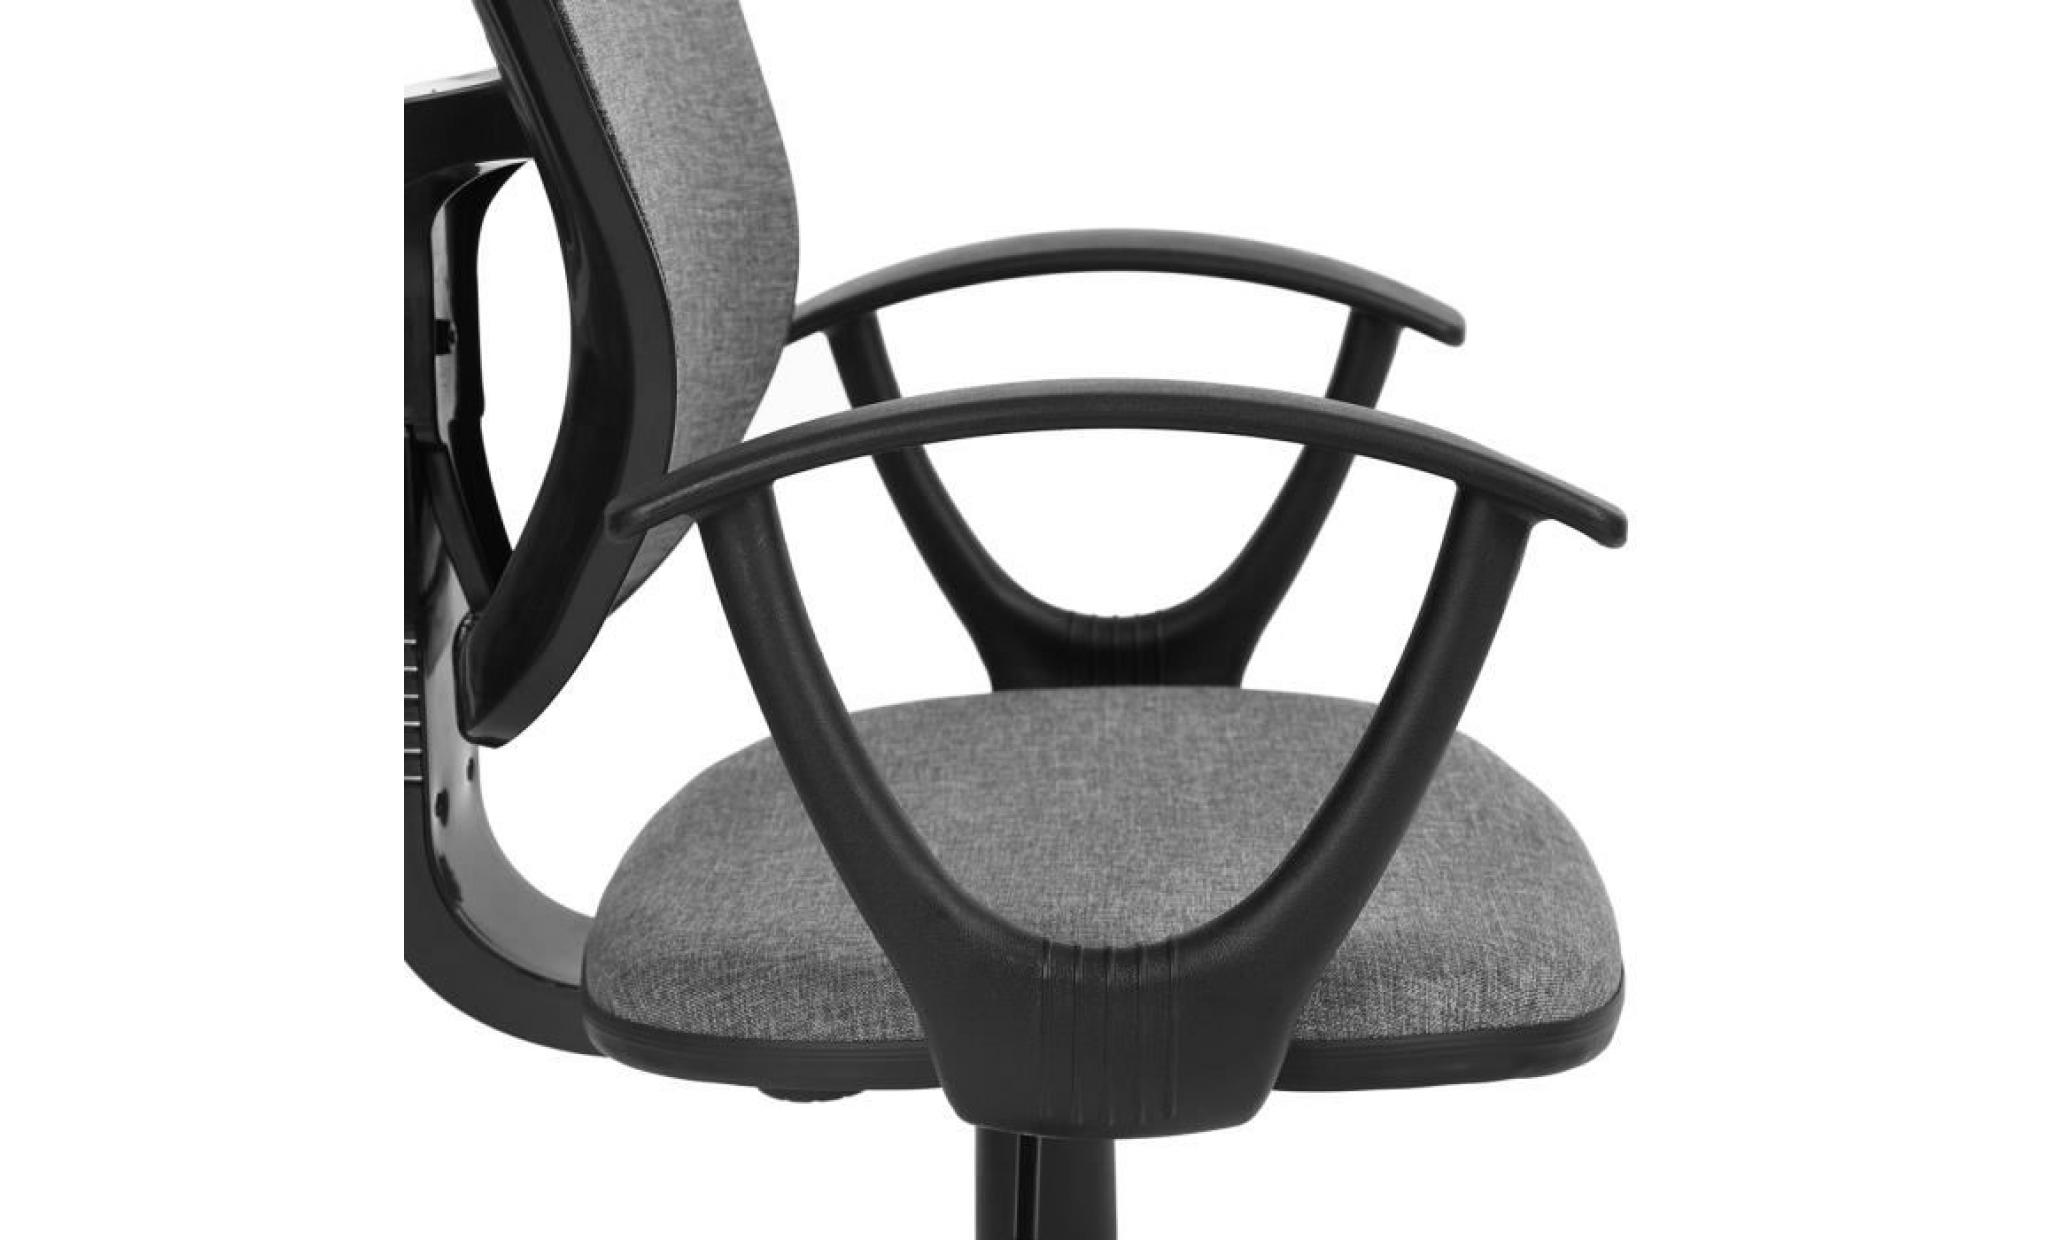 fauteuil de bureau siège réglable mobile roulant roulettes tissu plastique accoudoirs gris noir étudiant enfant pas cher